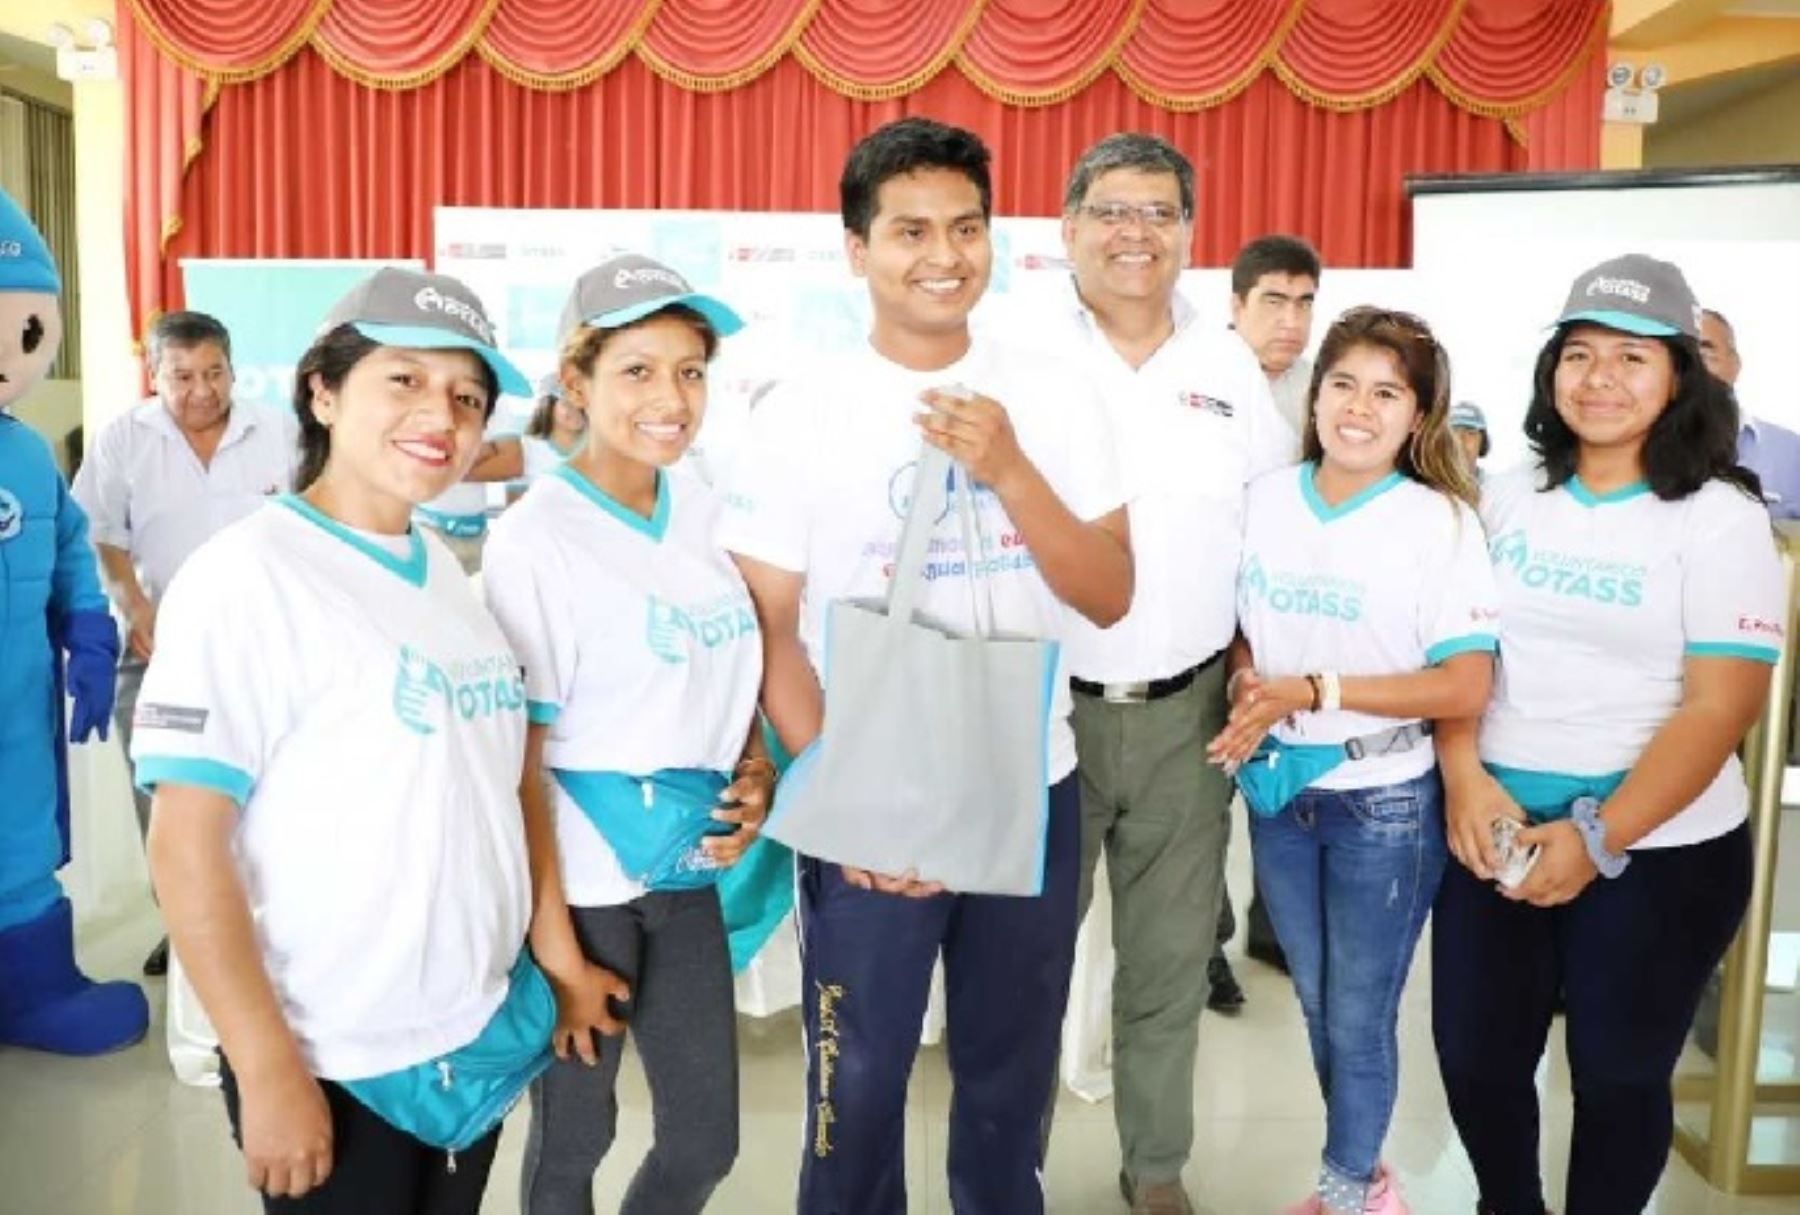 Voluntariado OTASS se iniciará en Pisco para promover cuidado del agua